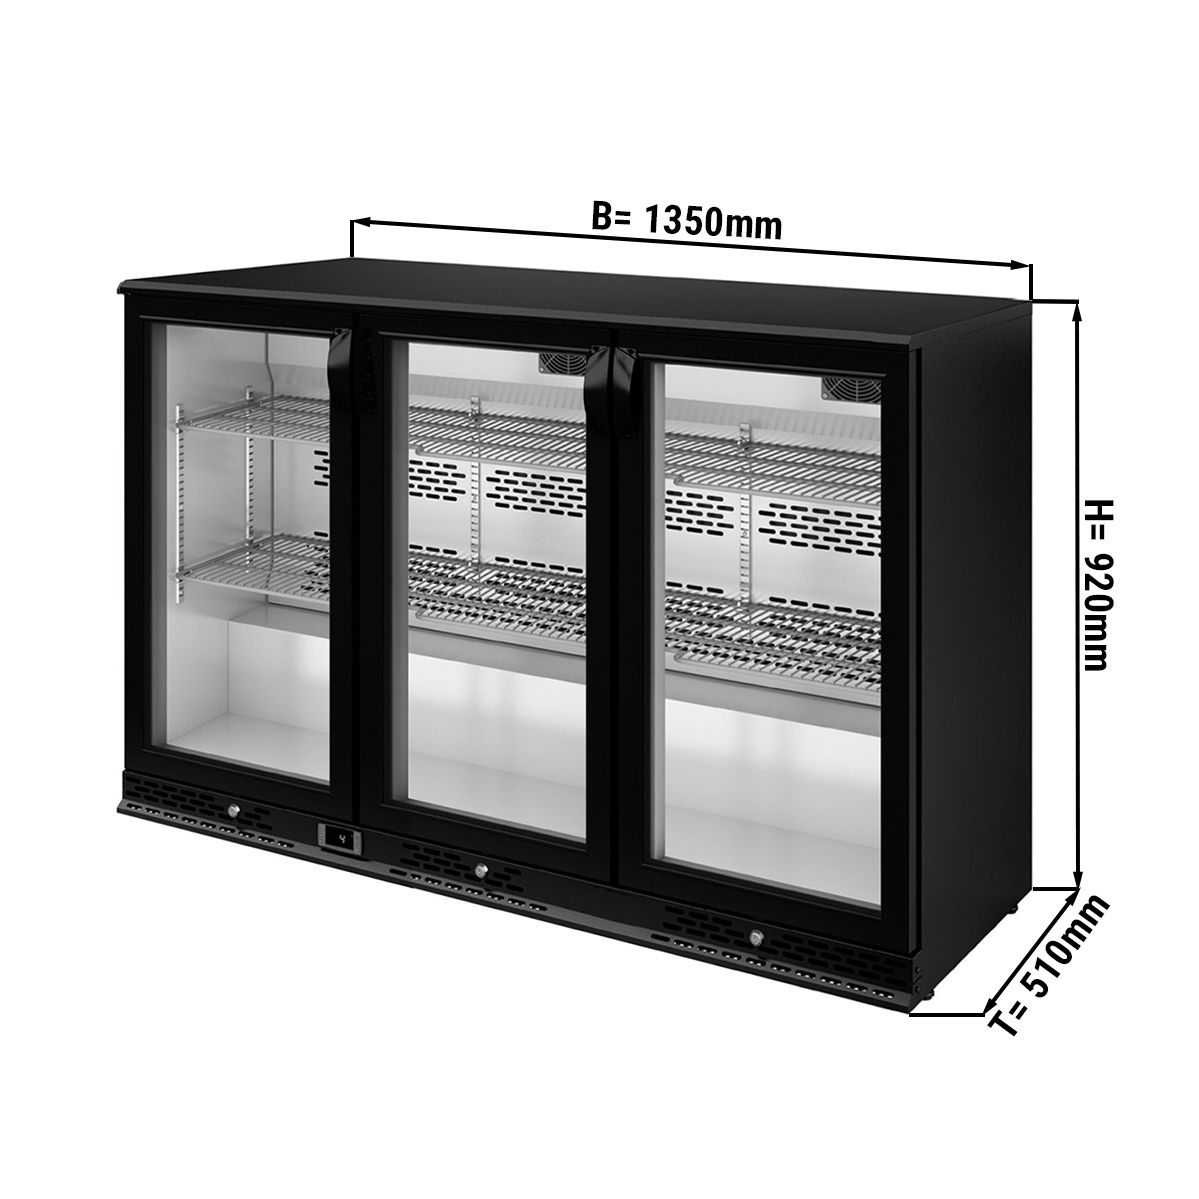 Beerlager 56 Réfrigérateur à boissons, 56 litres, 20 bouteilles, CEE G, Encastrable, 82 cm de hauteur, Porte vitrée avec cadre en acier  inoxydable, 3 clayettes, Température : 0 - 10 °C